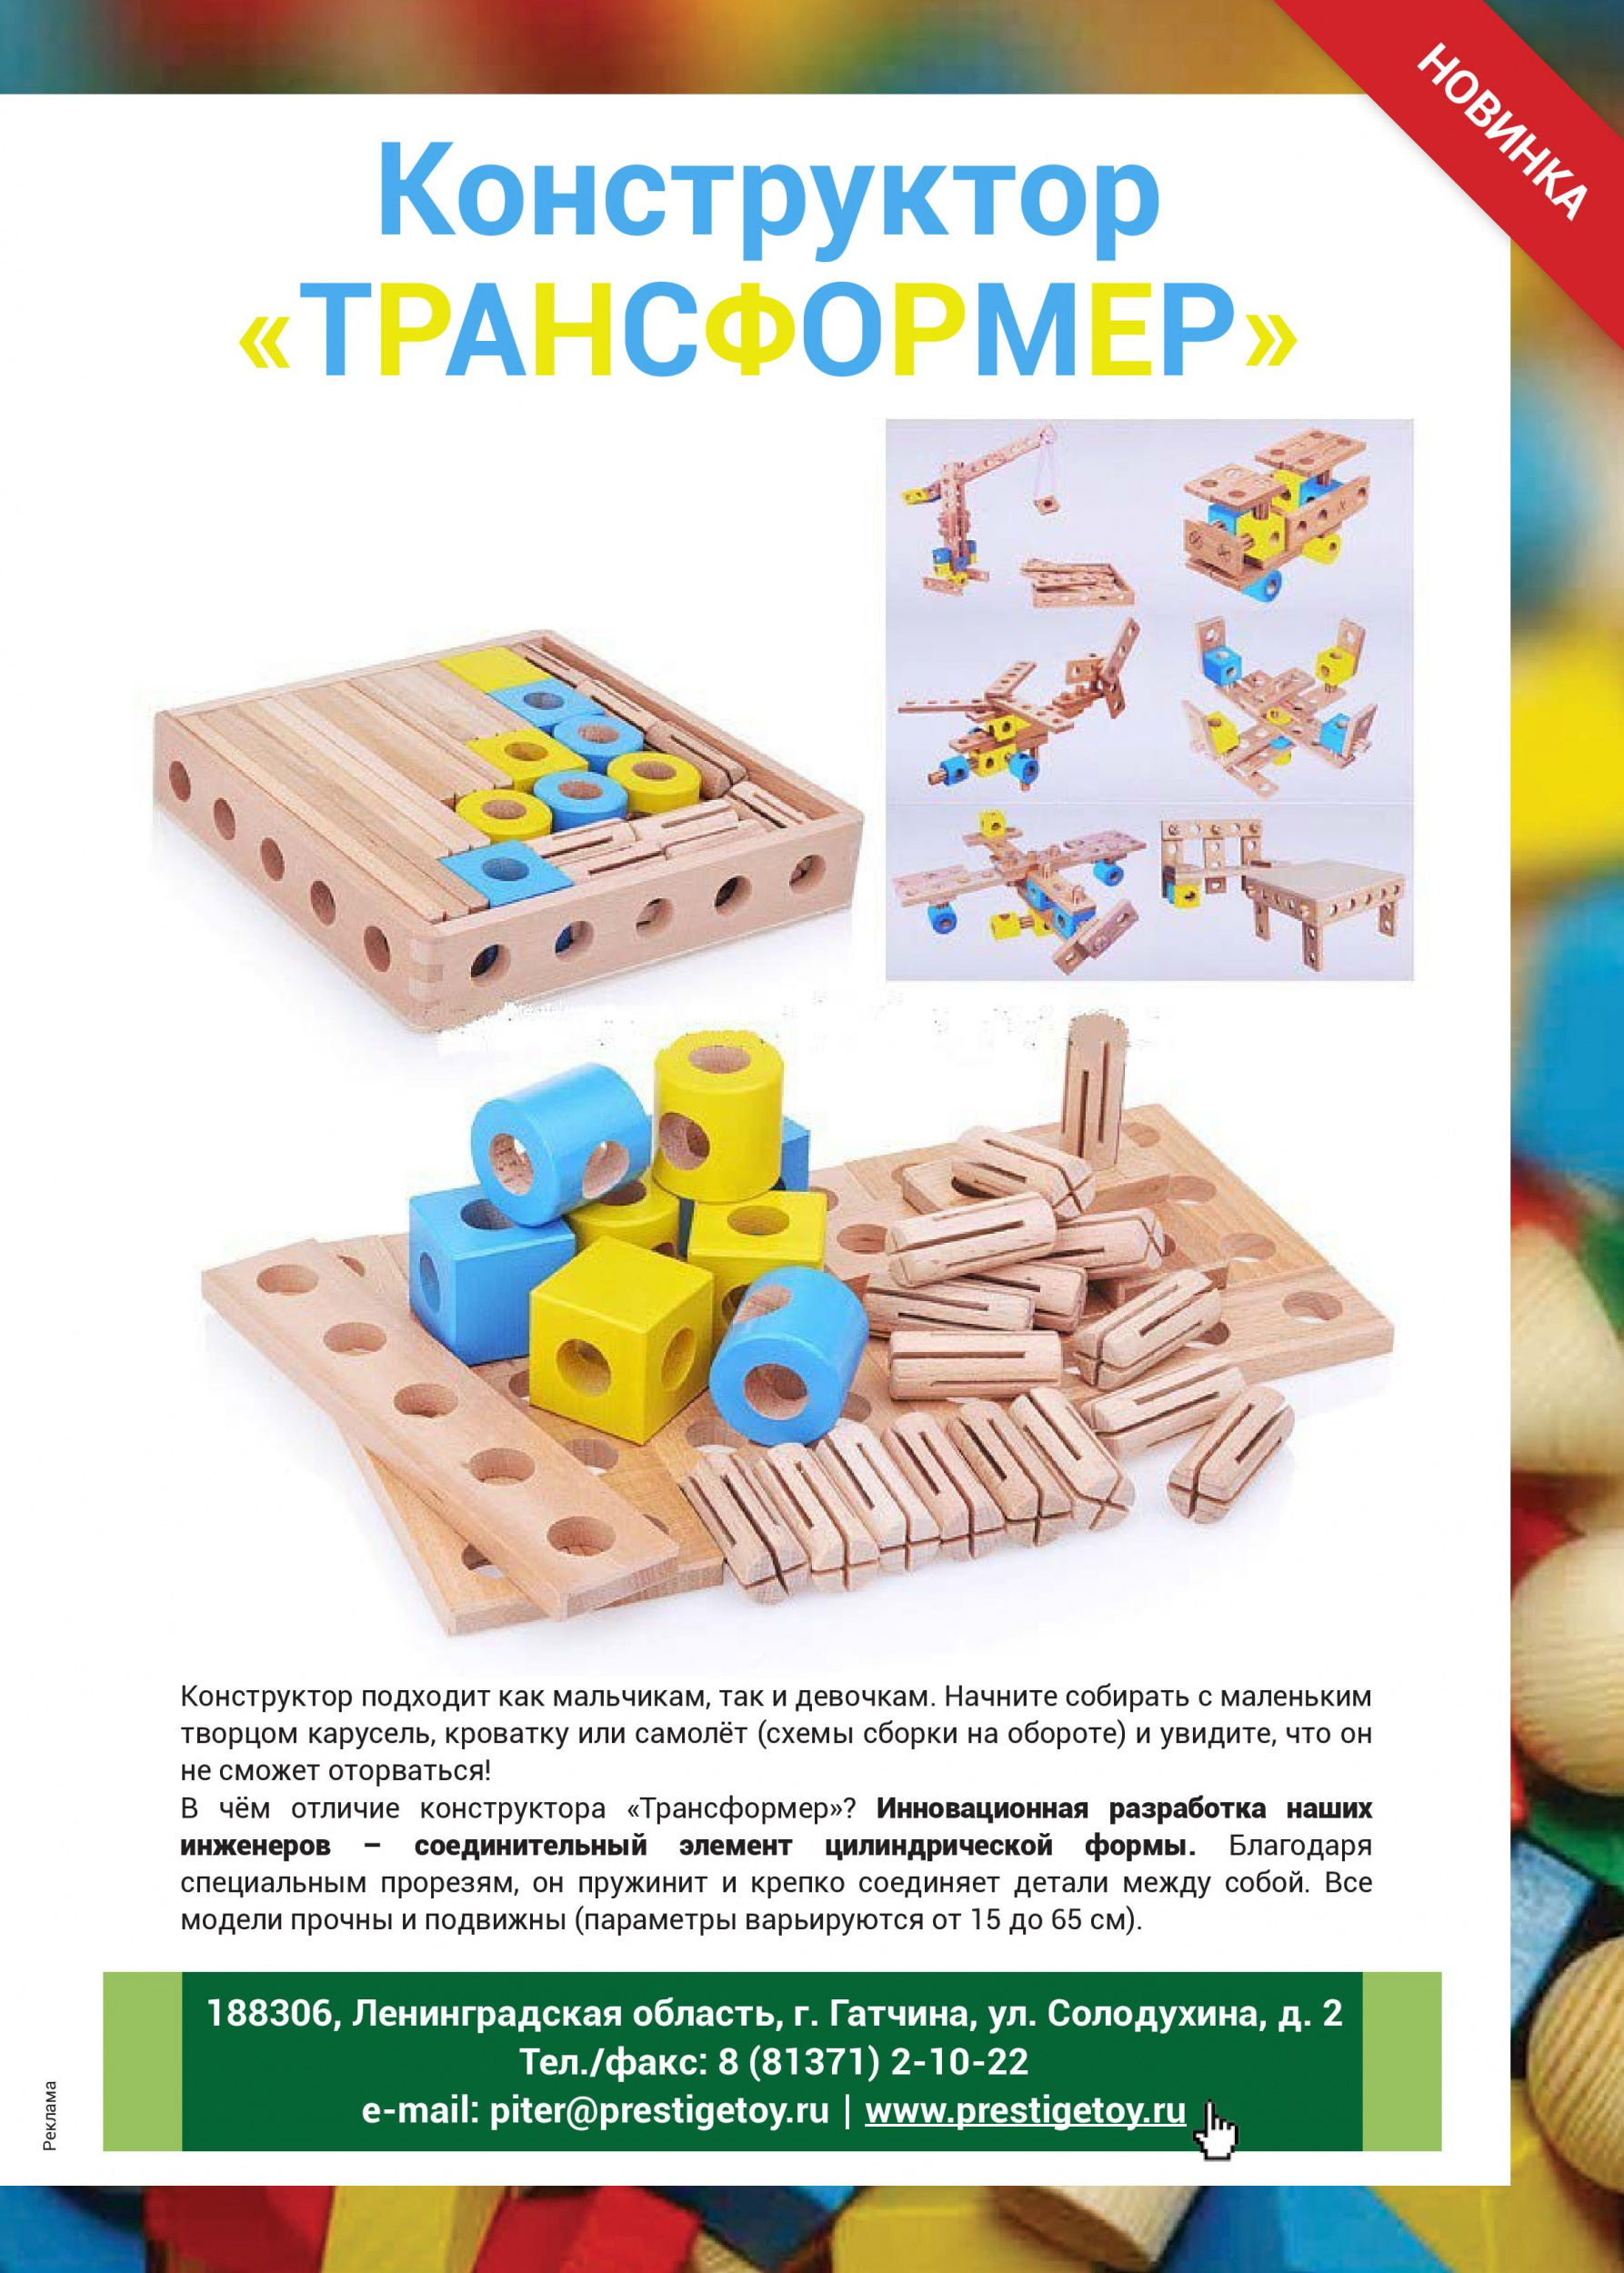 Отечественная производственная компания  по производству деревянной игрушки 